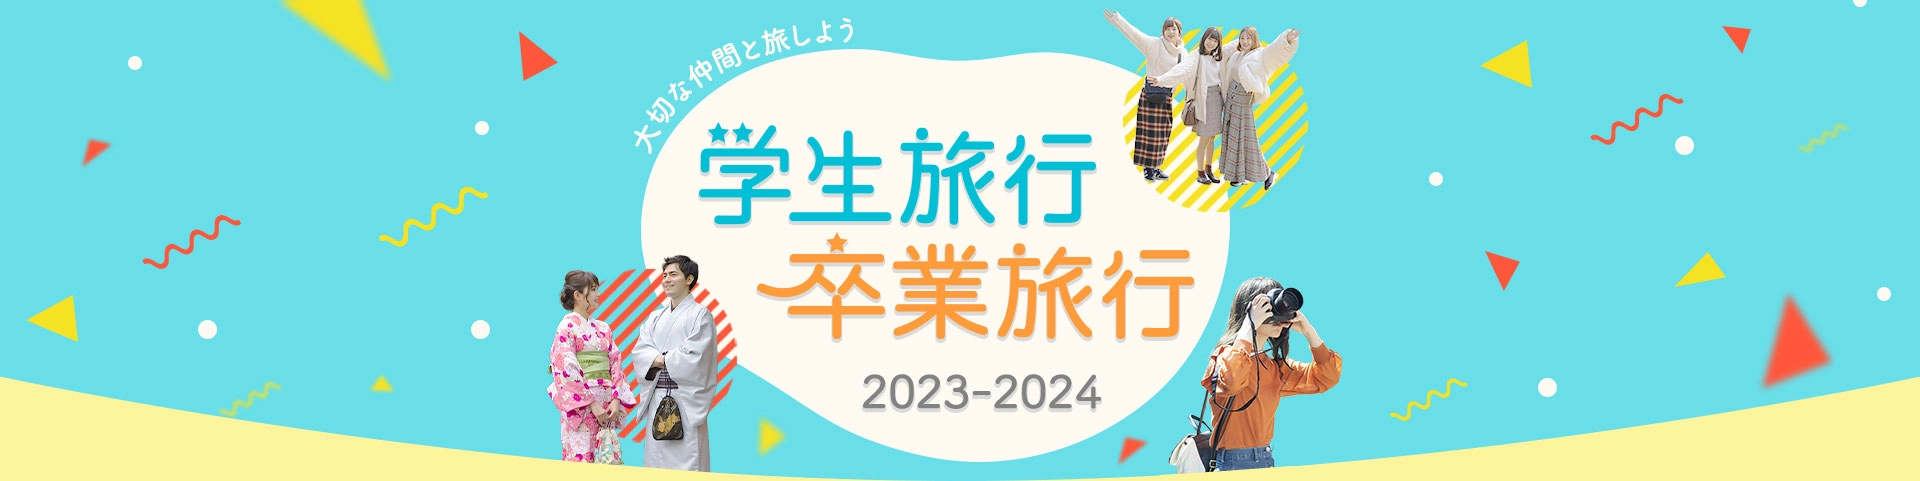 学生旅行・卒業旅行2023-2024